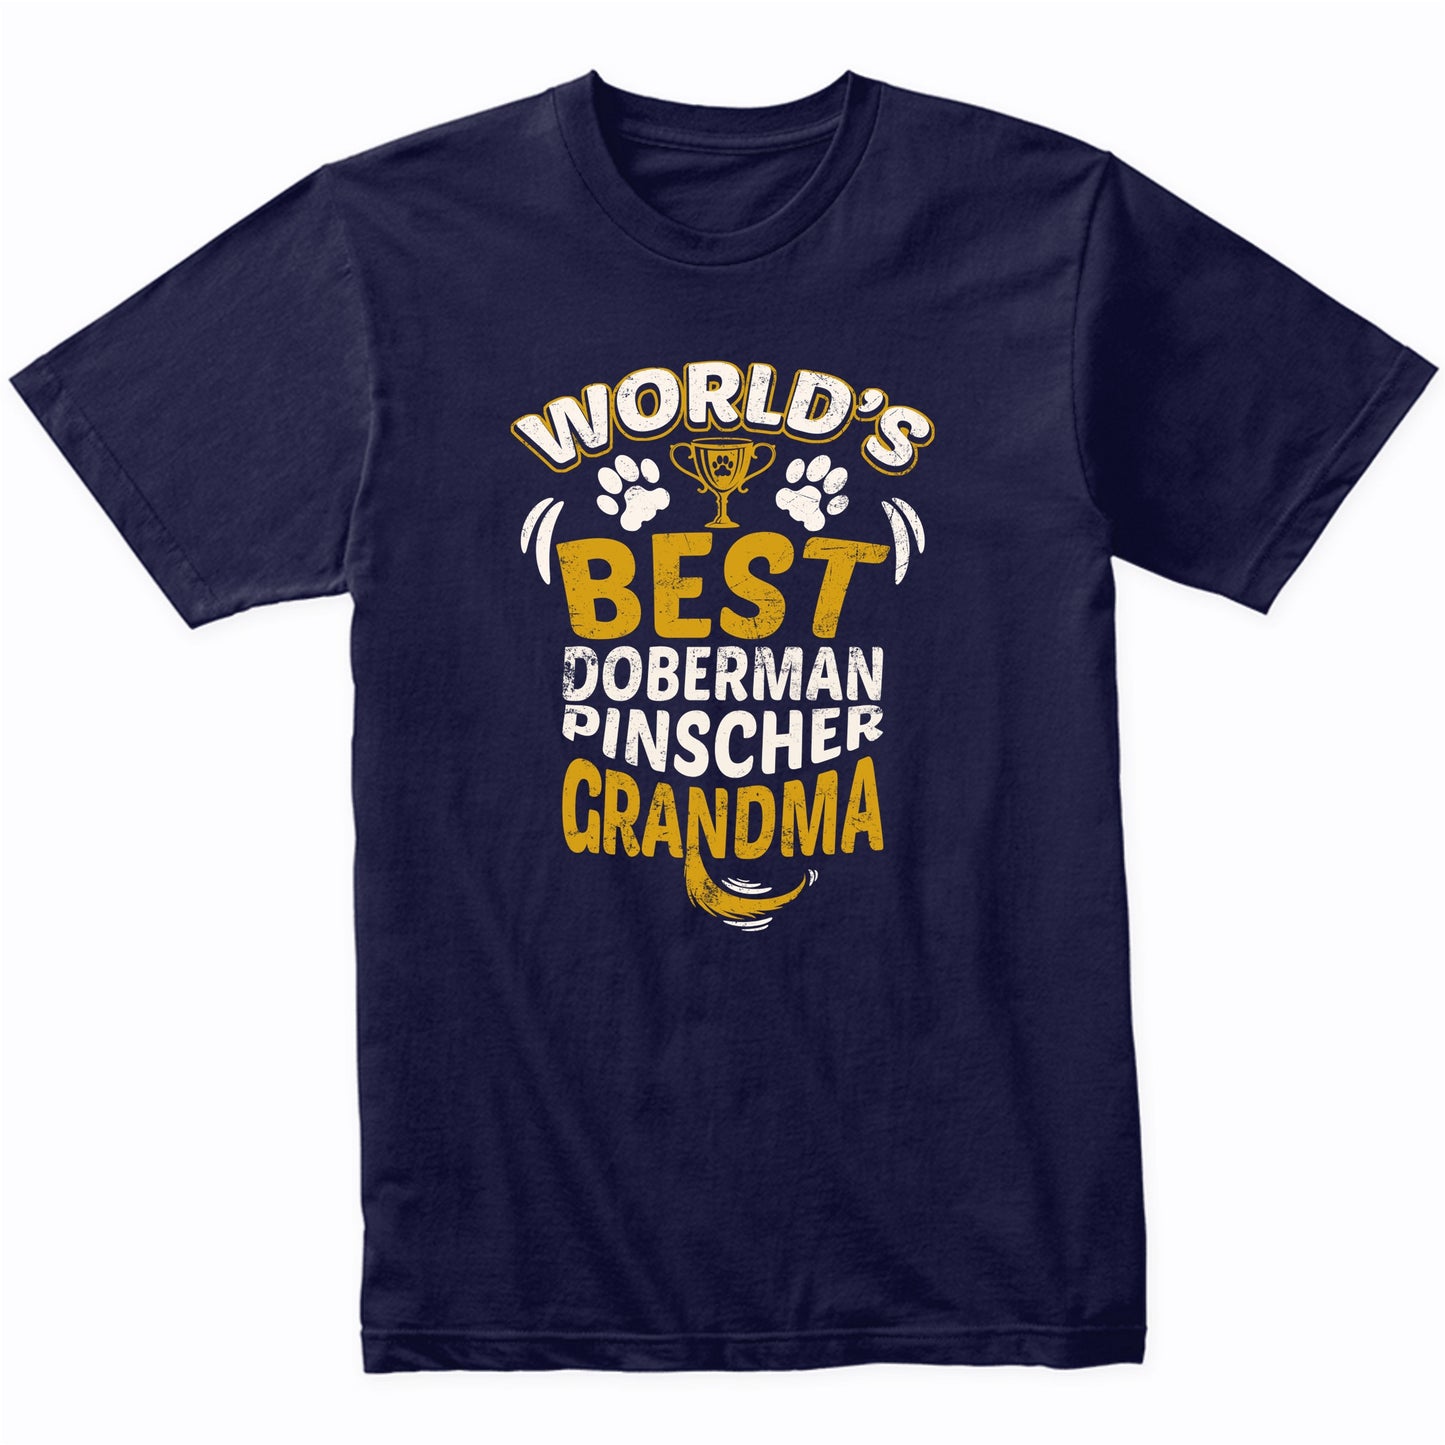 World's Best Doberman Pinscher Grandma Graphic T-Shirt